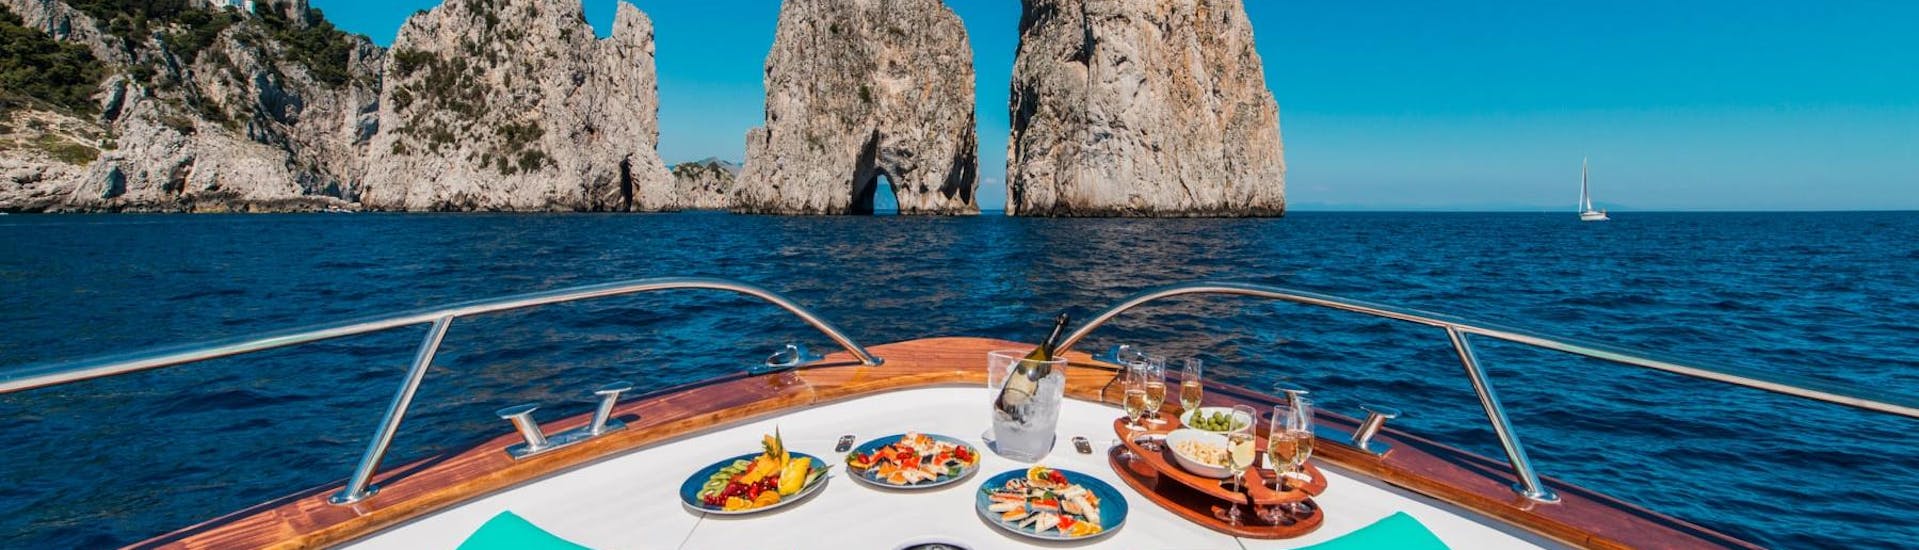 Un delizioso aperitivo viene servito durante uno dei tour in barca organizzati da You Know! Boat Sorrento.